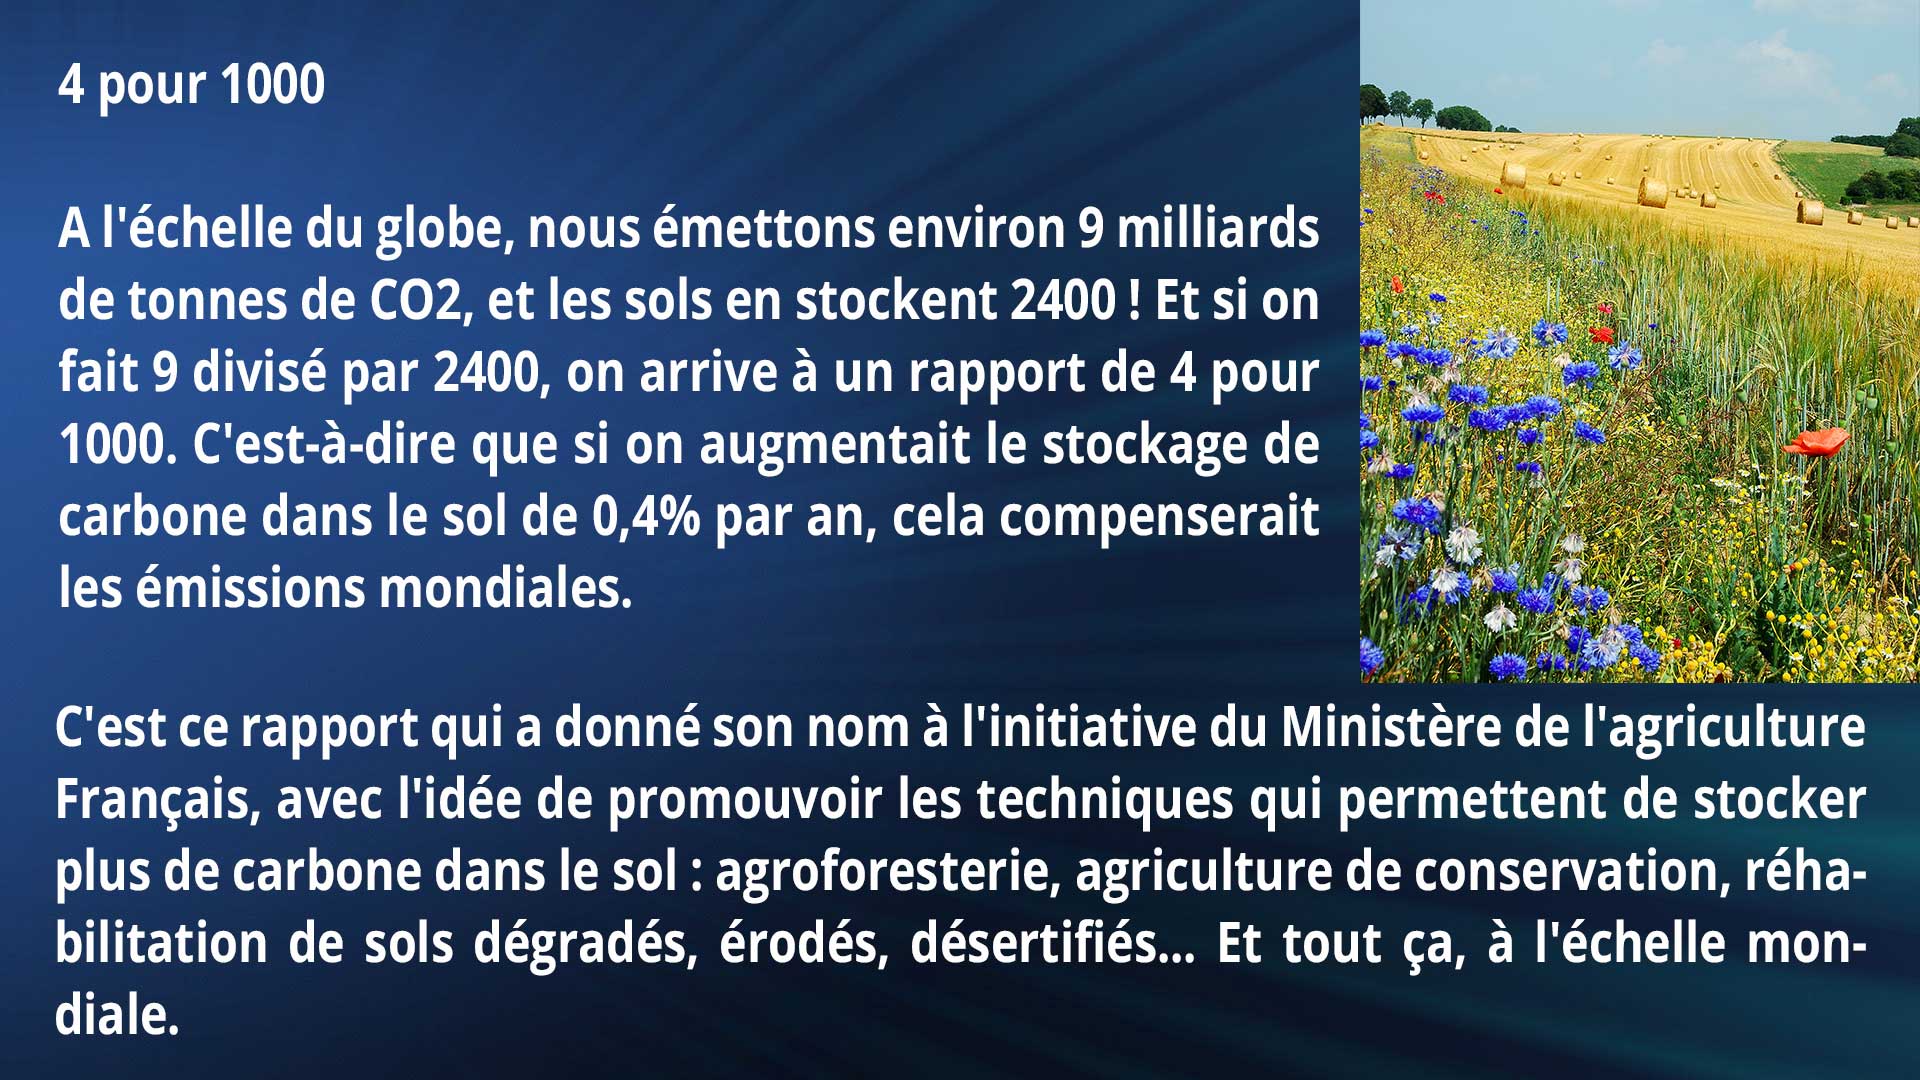 4 pour 1000
A l'échelle du globe, nous émettons environ 9 milliards de tonnes de CO2, et les sols en stockent 2400 ! Et si on fait 9 divisé par 2400, on arrive à un rapport de 4 pour 1000. C'est-à-dire que si on augmentait le stockage de carbone dans le sol de 0,4% par an, cela compenserait les émissions mondiales. C'est ce rapport qui a donné son nom à l'initiative du Ministère de l'agriculture Français, avec l'idée de promouvoir les techniques qui permettent de stocker plus de carbone dans le sol : agroforesterie, agriculture de conservation, réhabilitation de sols dégradés, érodés, désertifiés... Et tout ça, à l'échelle mondiale.